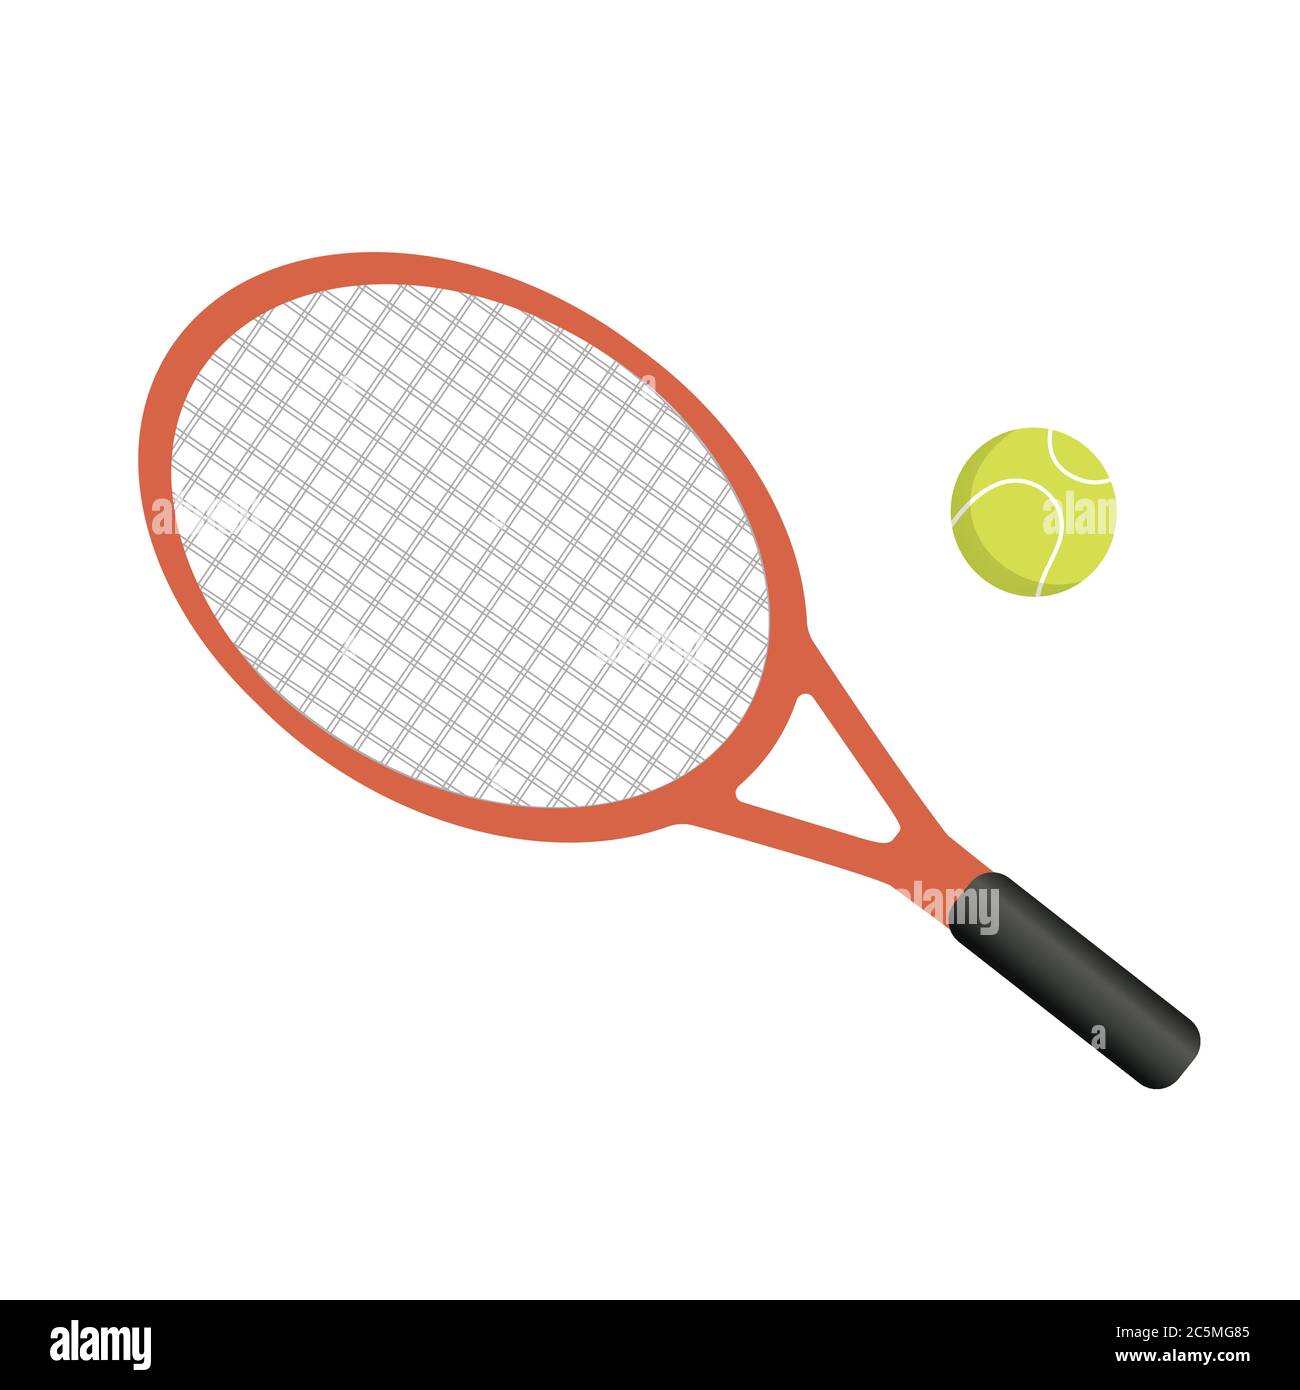 Racchetta da tennis con palla gialla su sfondo bianco. Illustrazione vettoriale in stile piatto alla moda. EPS 10 Illustrazione Vettoriale